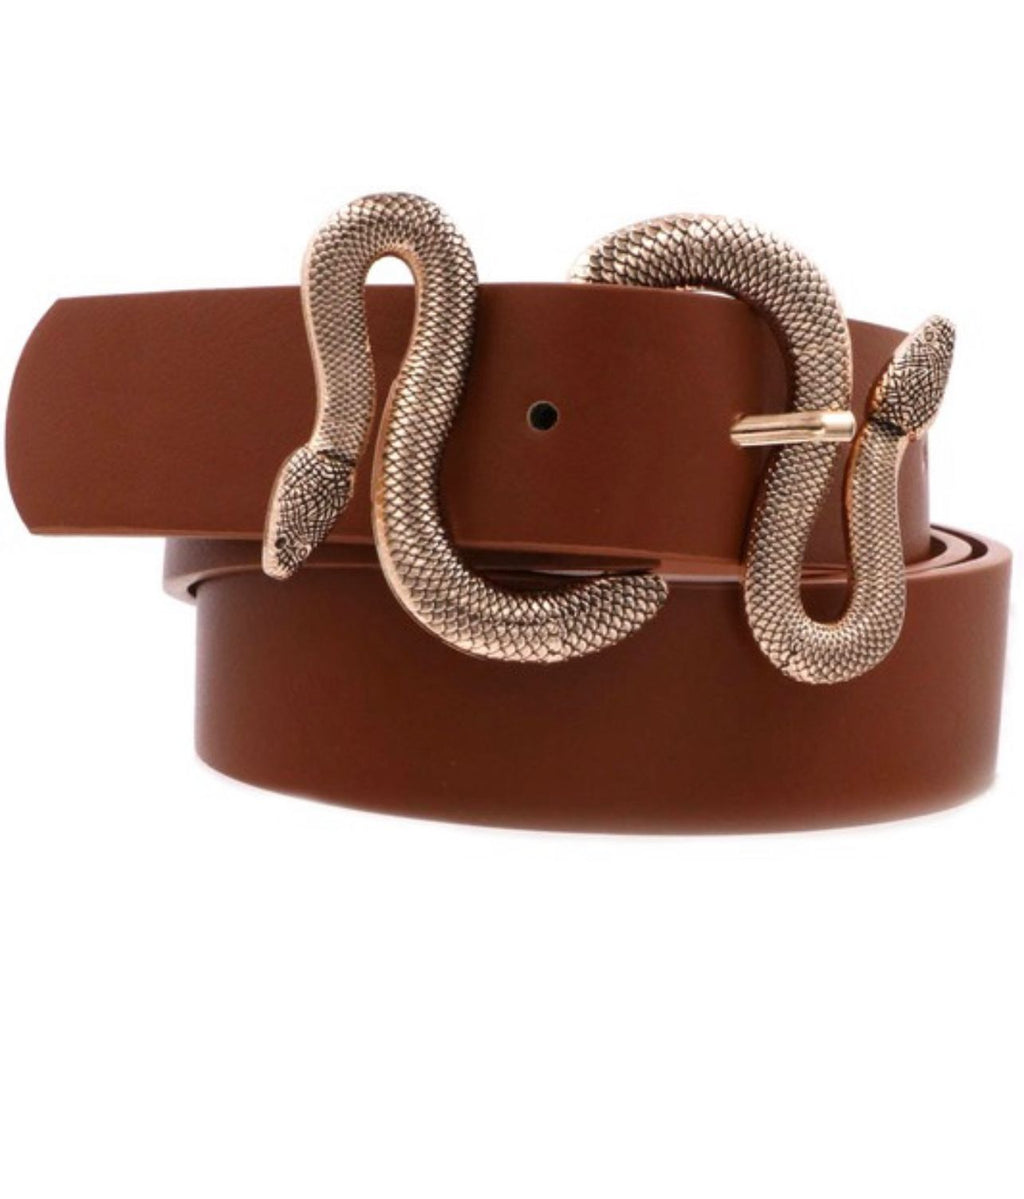 Snake design buckle belt